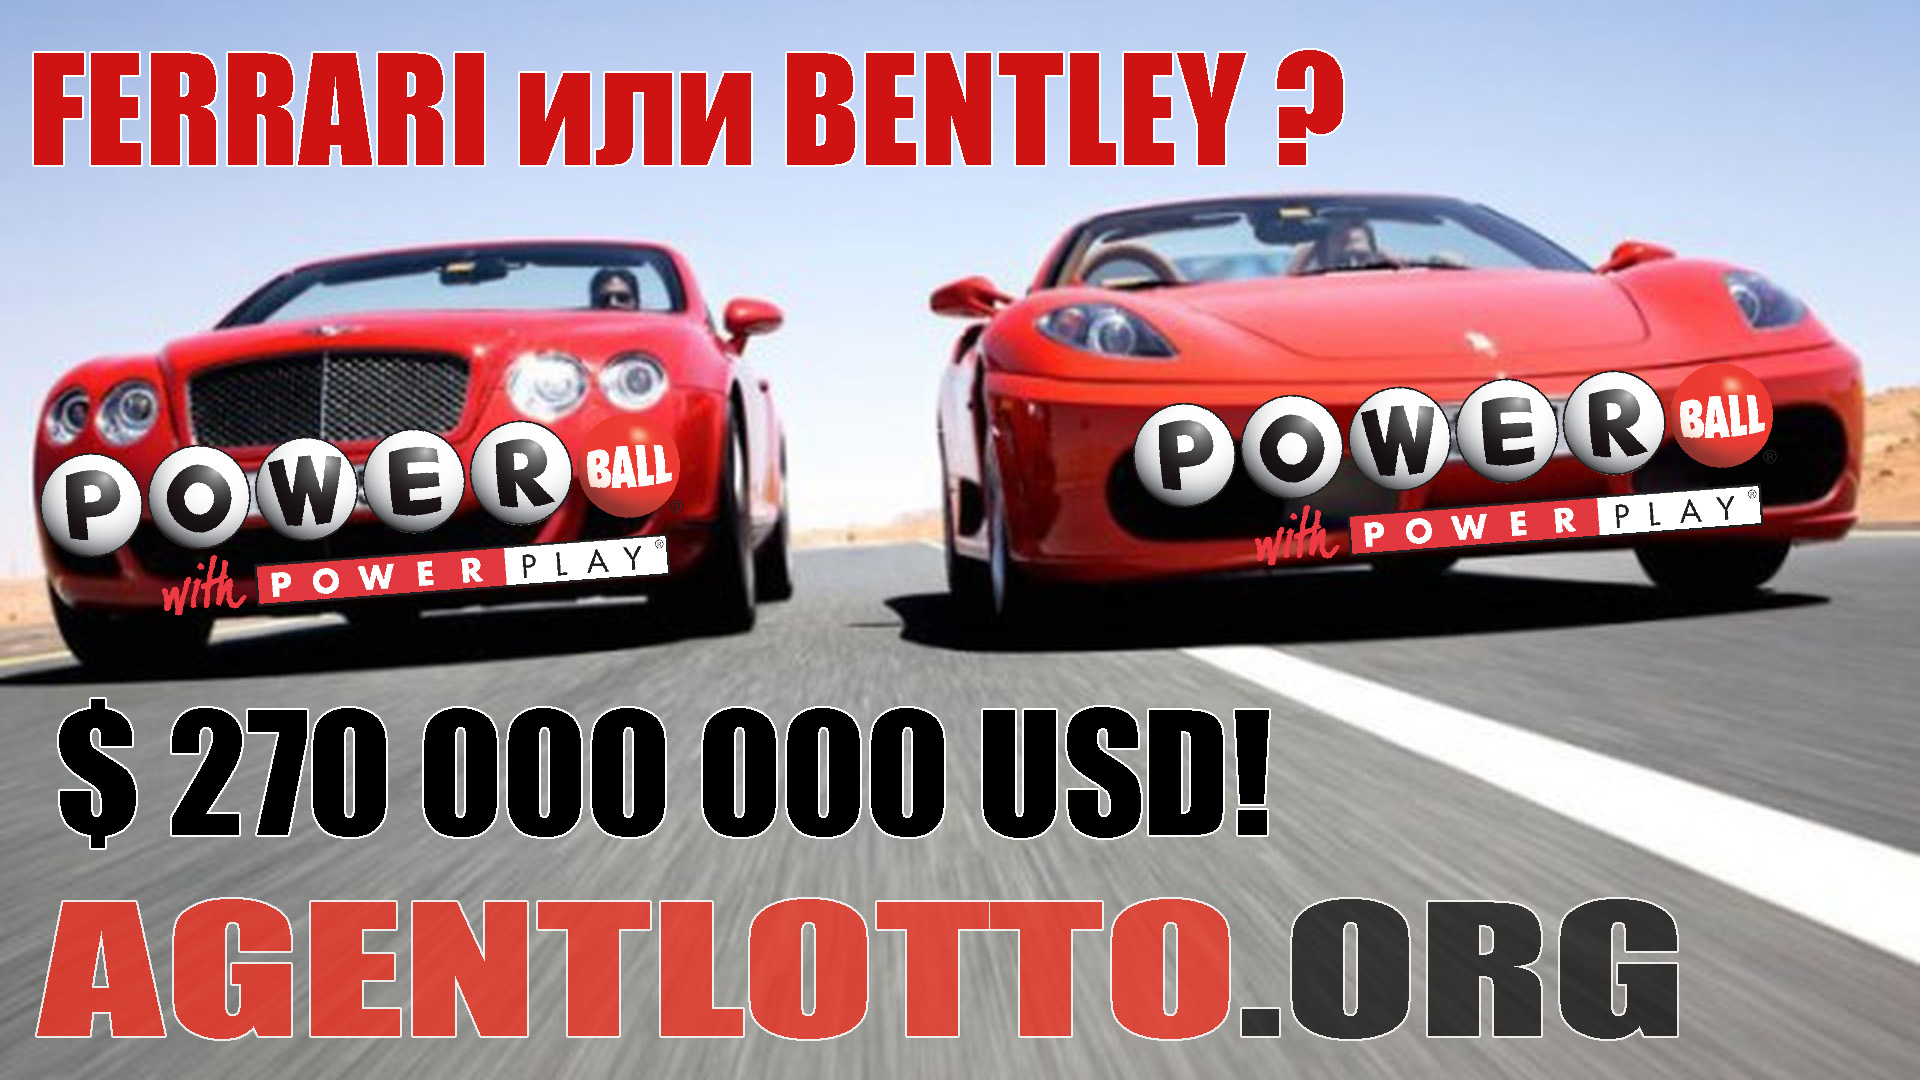 Фееричный джекпот дня от Powerball - $ 270 000 000 USD! Выбирать будете Ferrari или Bentley? Обе!